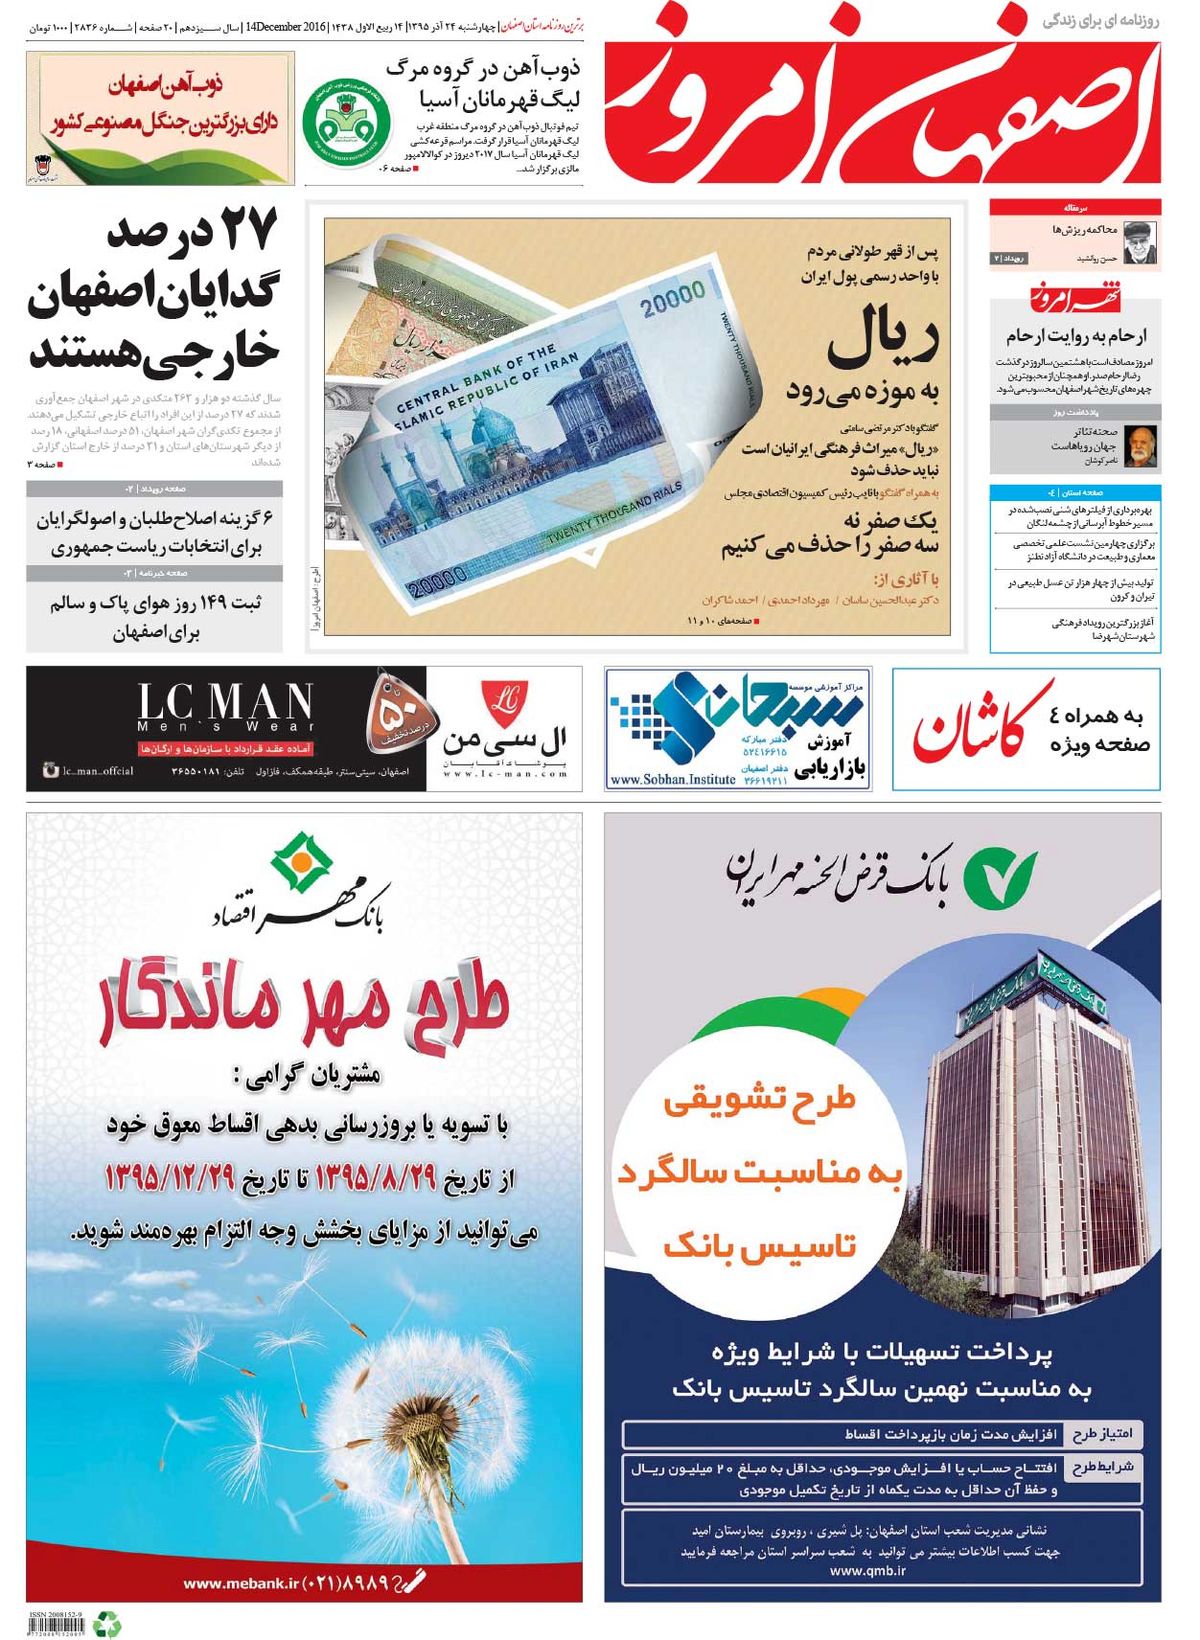 روزنامه اصفهان امروز شماره 2836؛ 24 آذر 1395